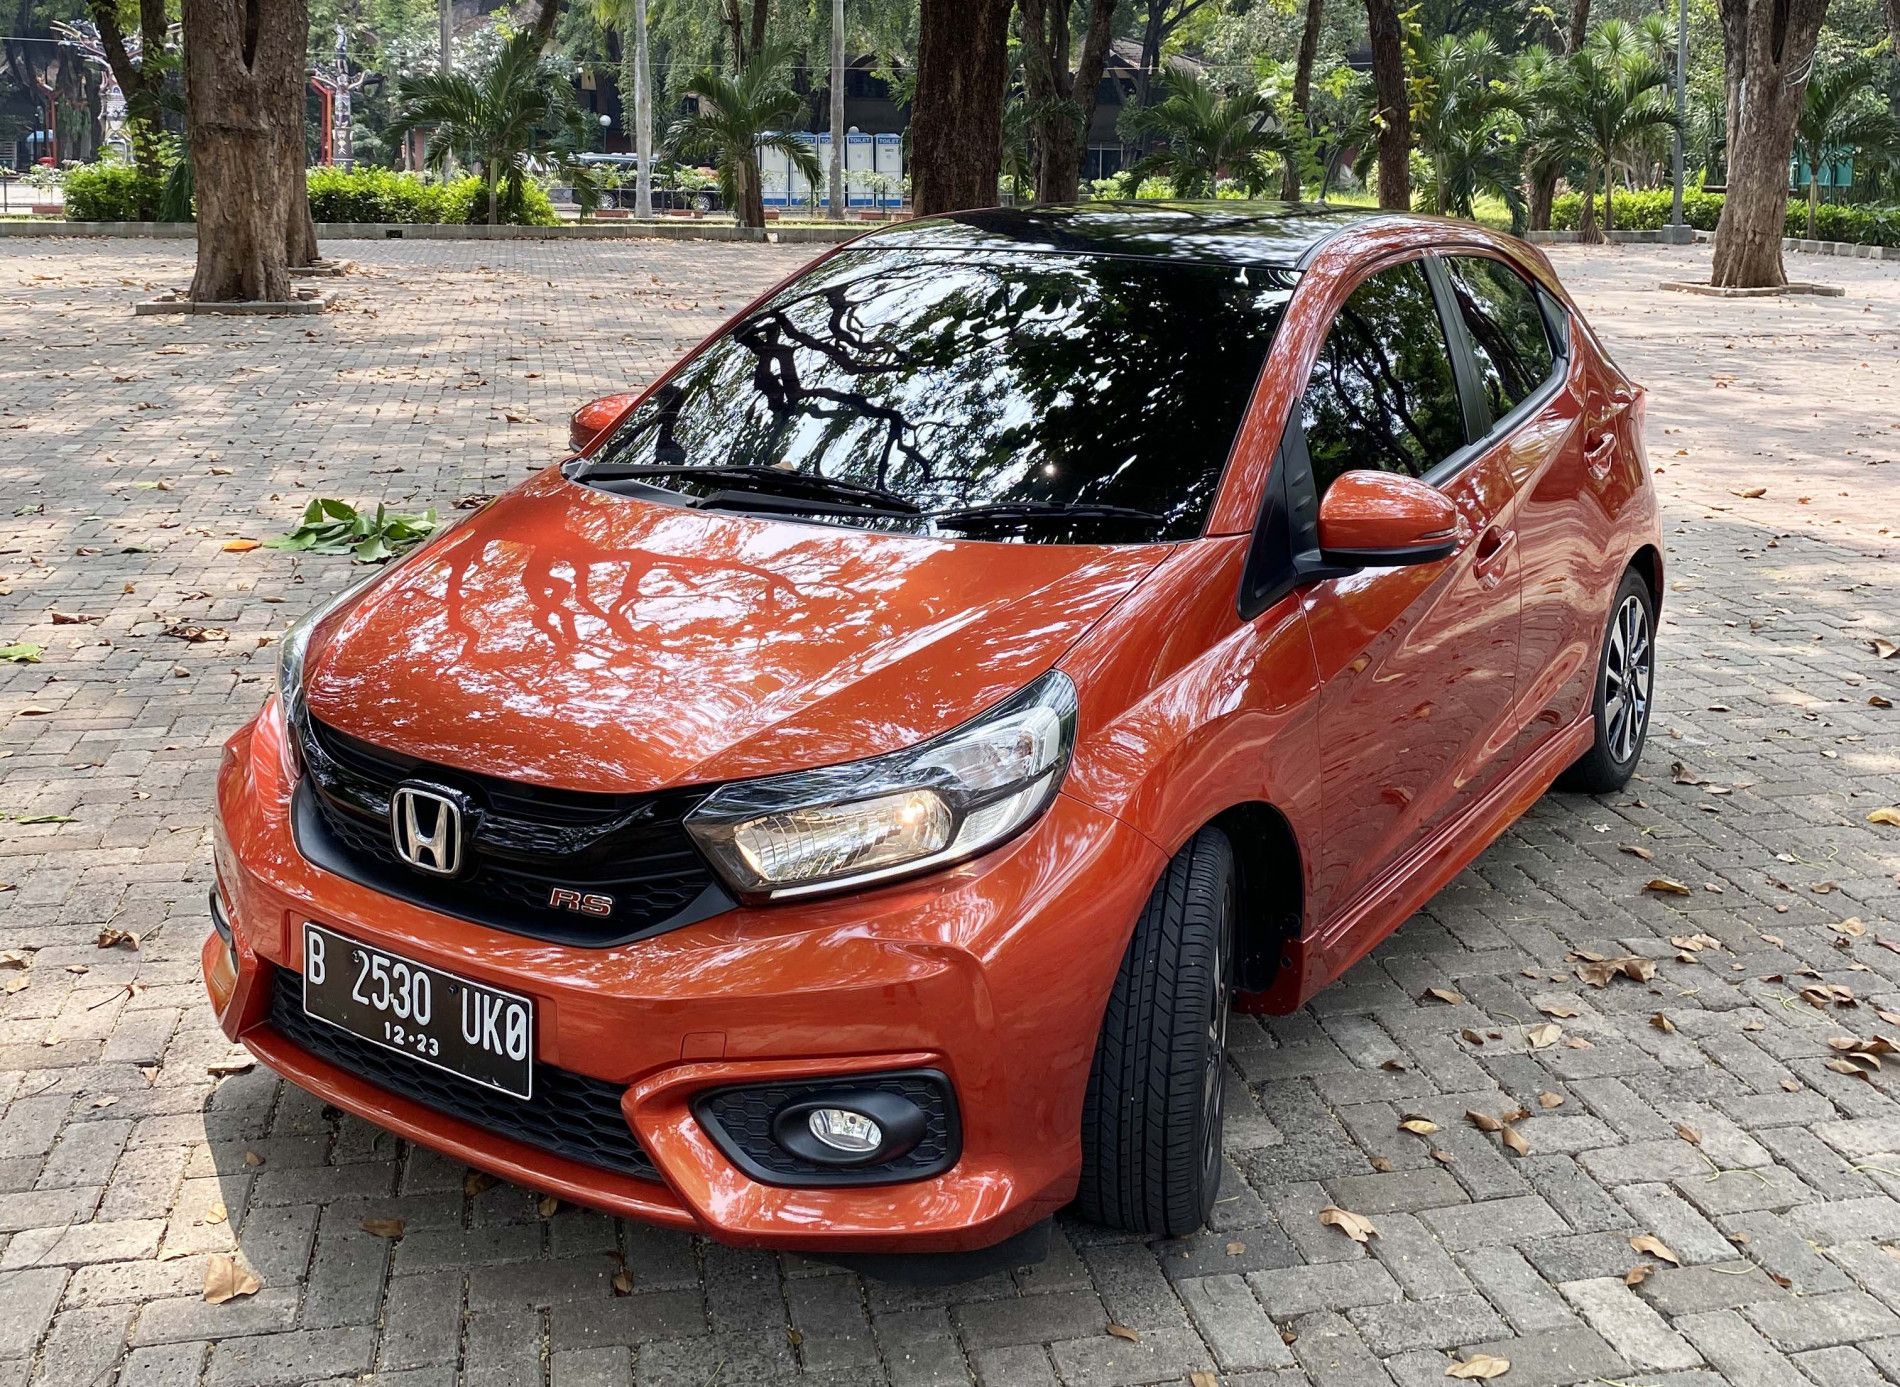 Honda Brio Catat Prestasi Sebagai Model dengan Penjualan Tertinggi di Indonesia Pada Tahun 2020